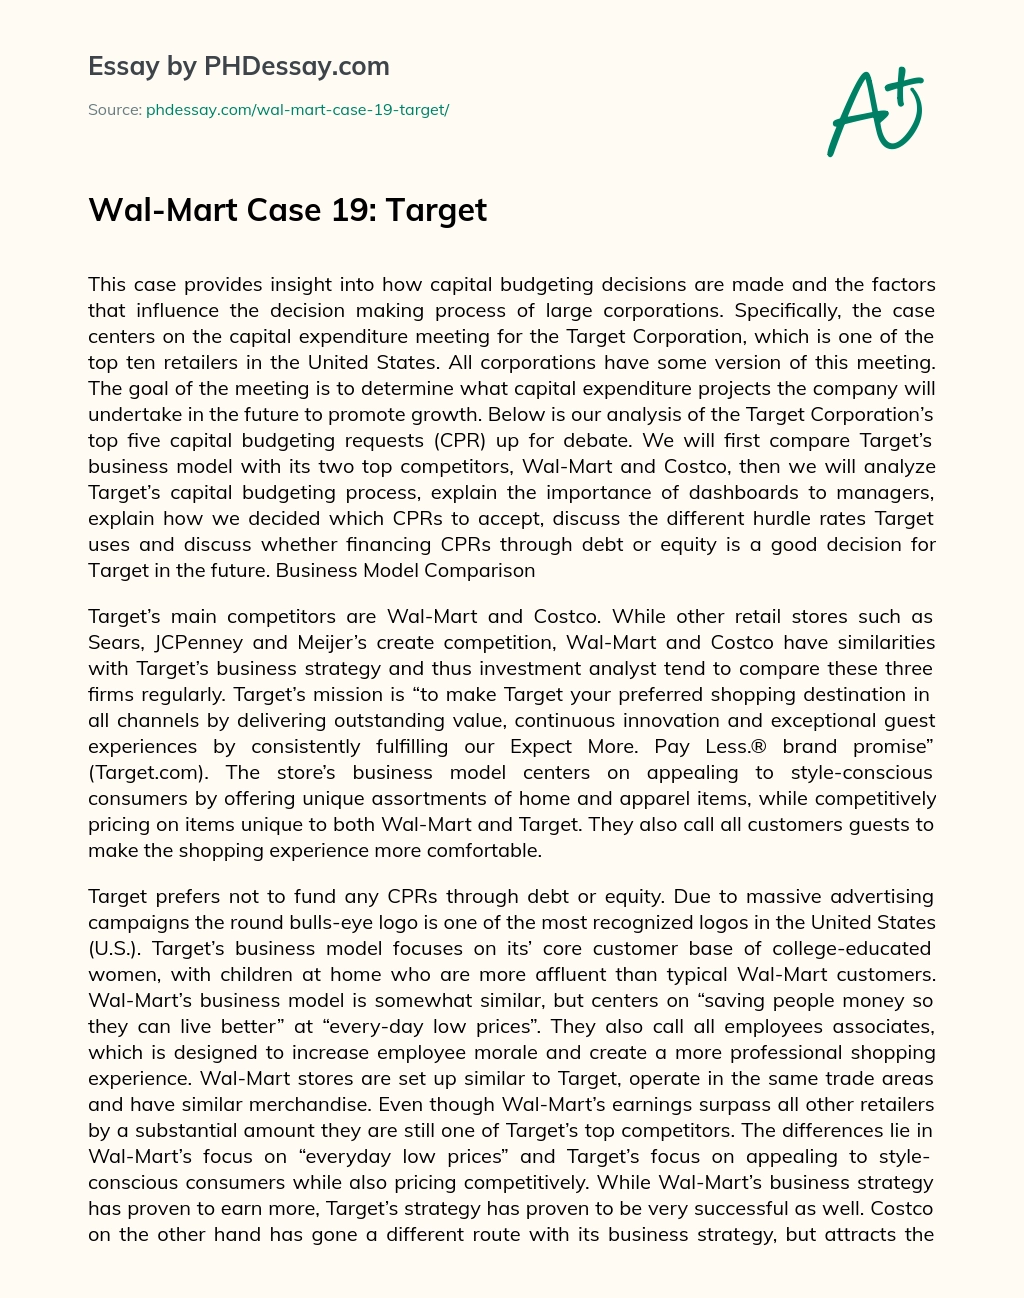 Wal-Mart Case 19: Target essay